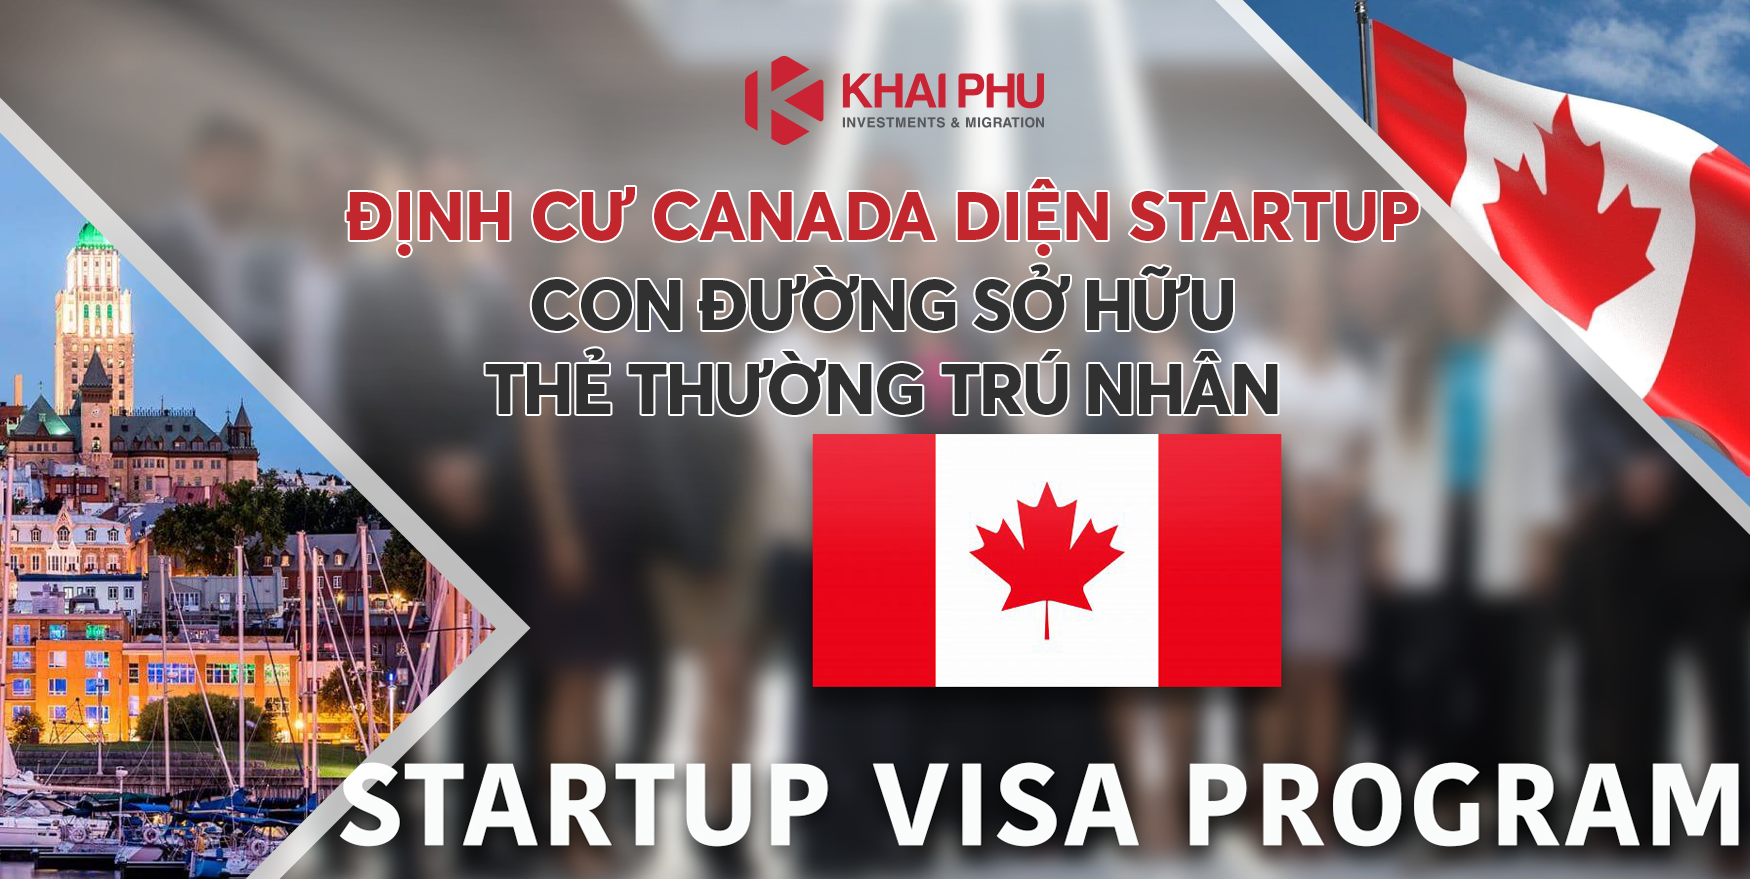 Định cư Canada diện Startup